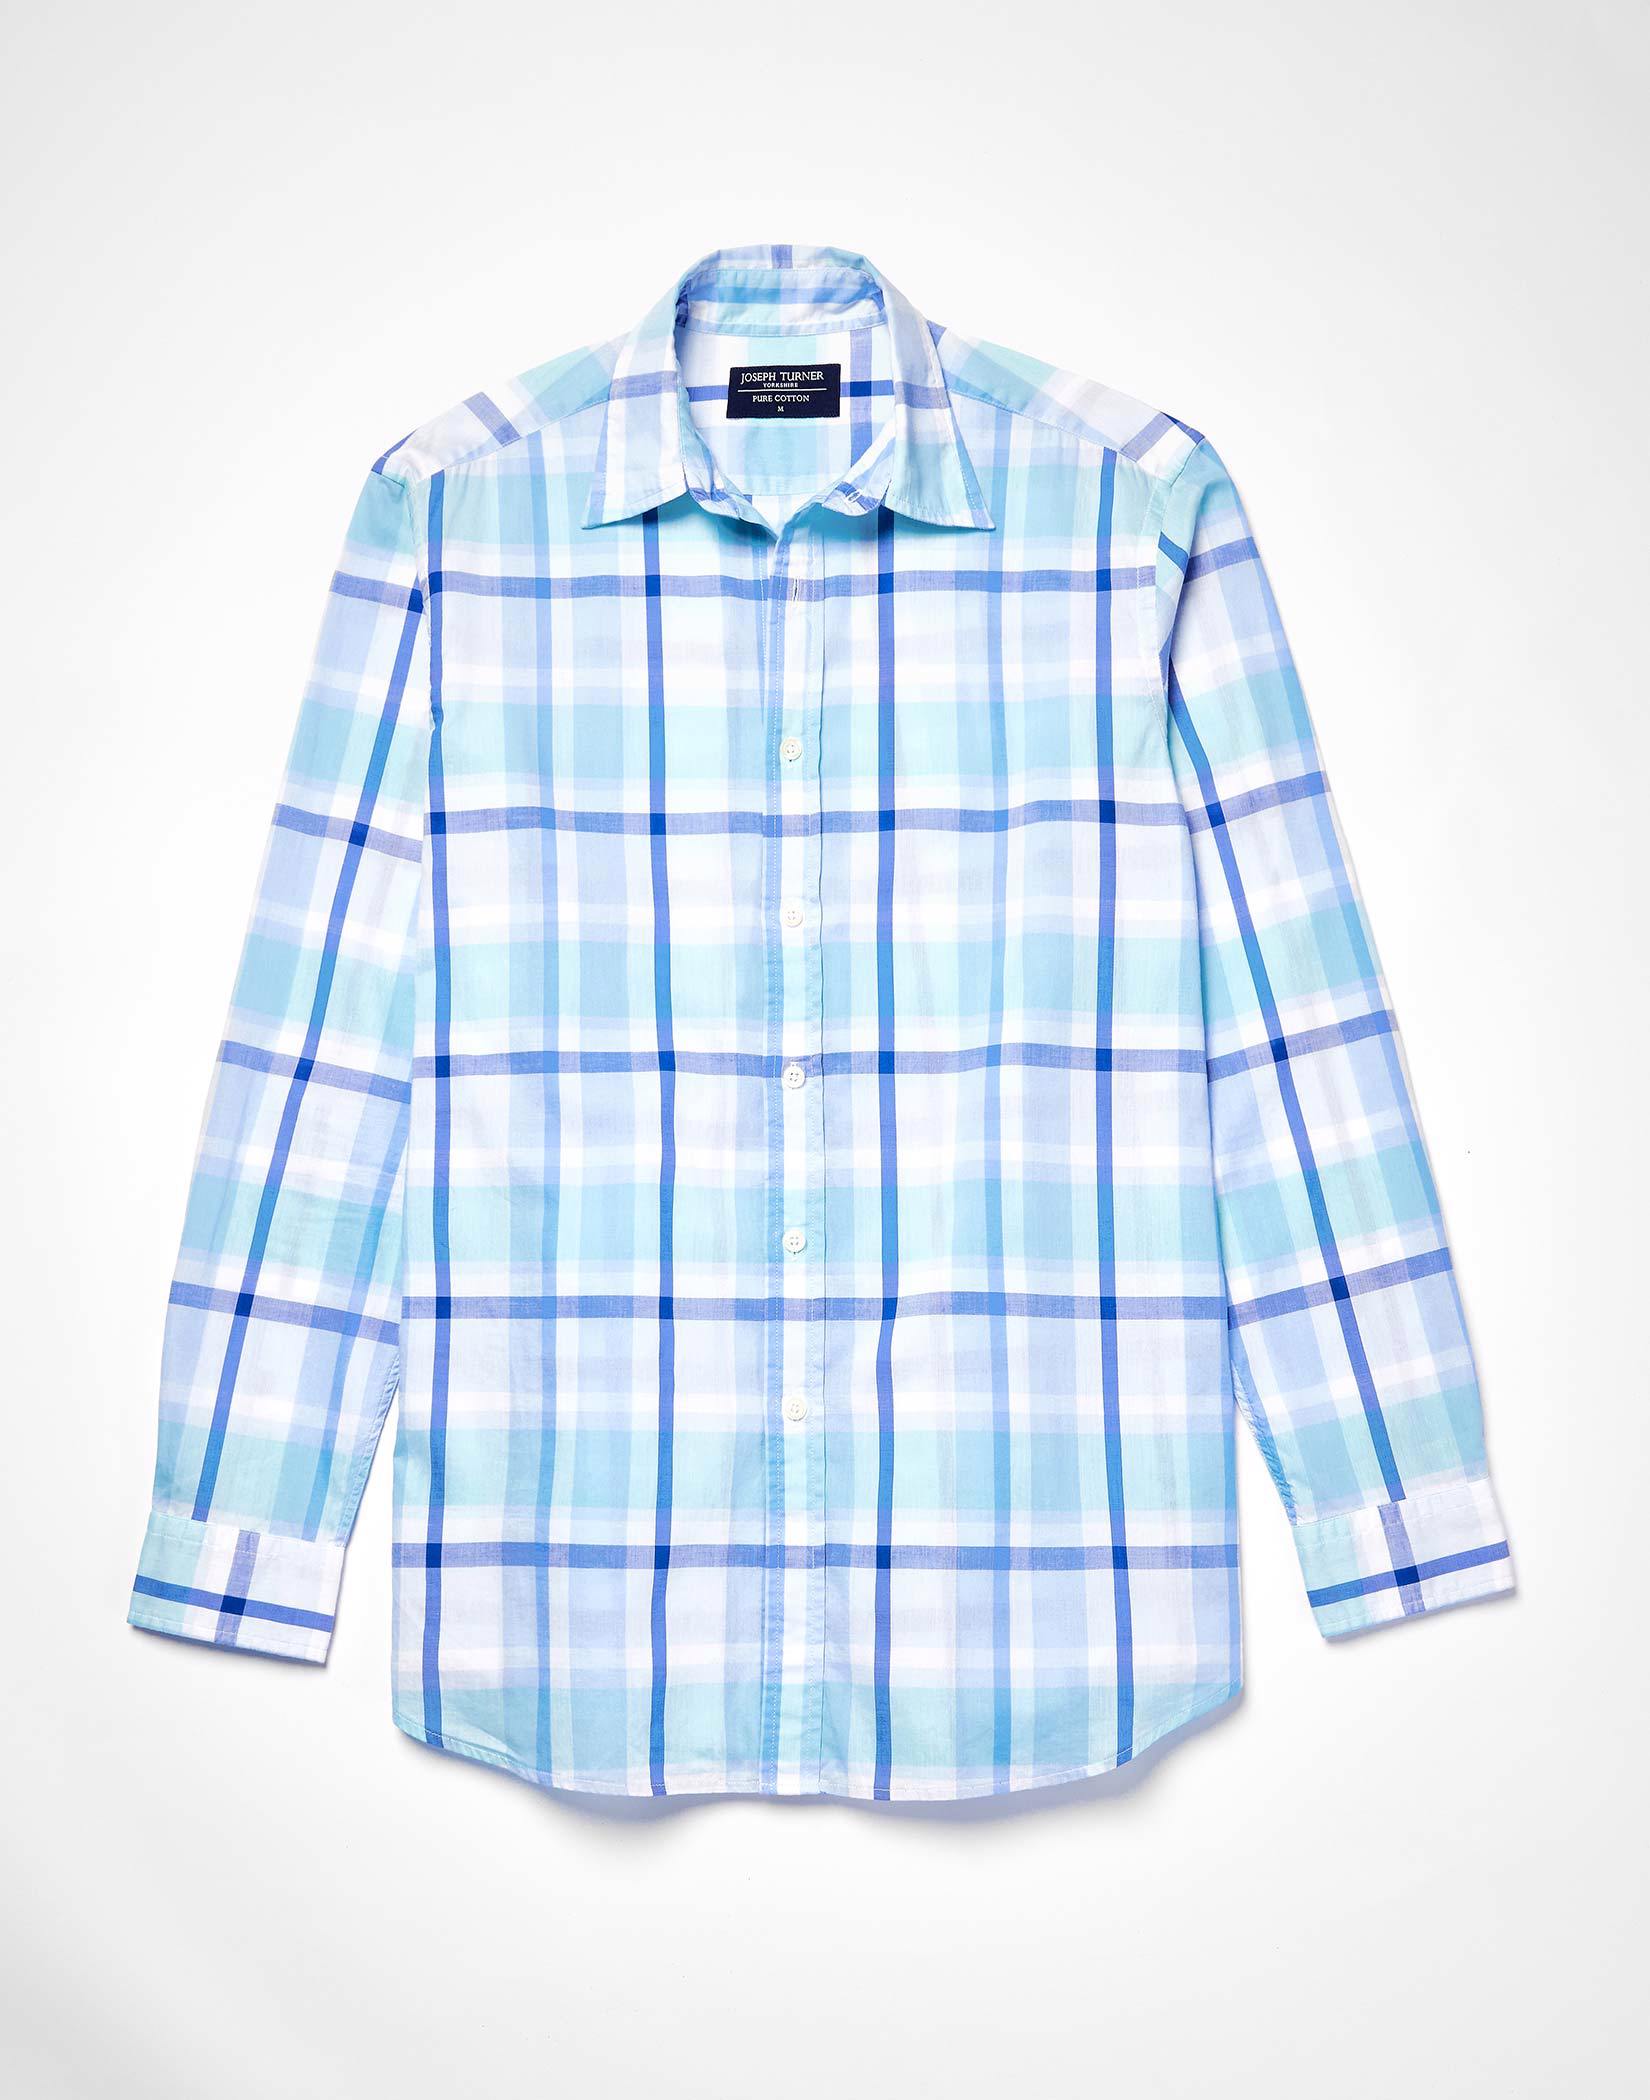 Weekend Shirt Long Sleeve - Navy/Aqua